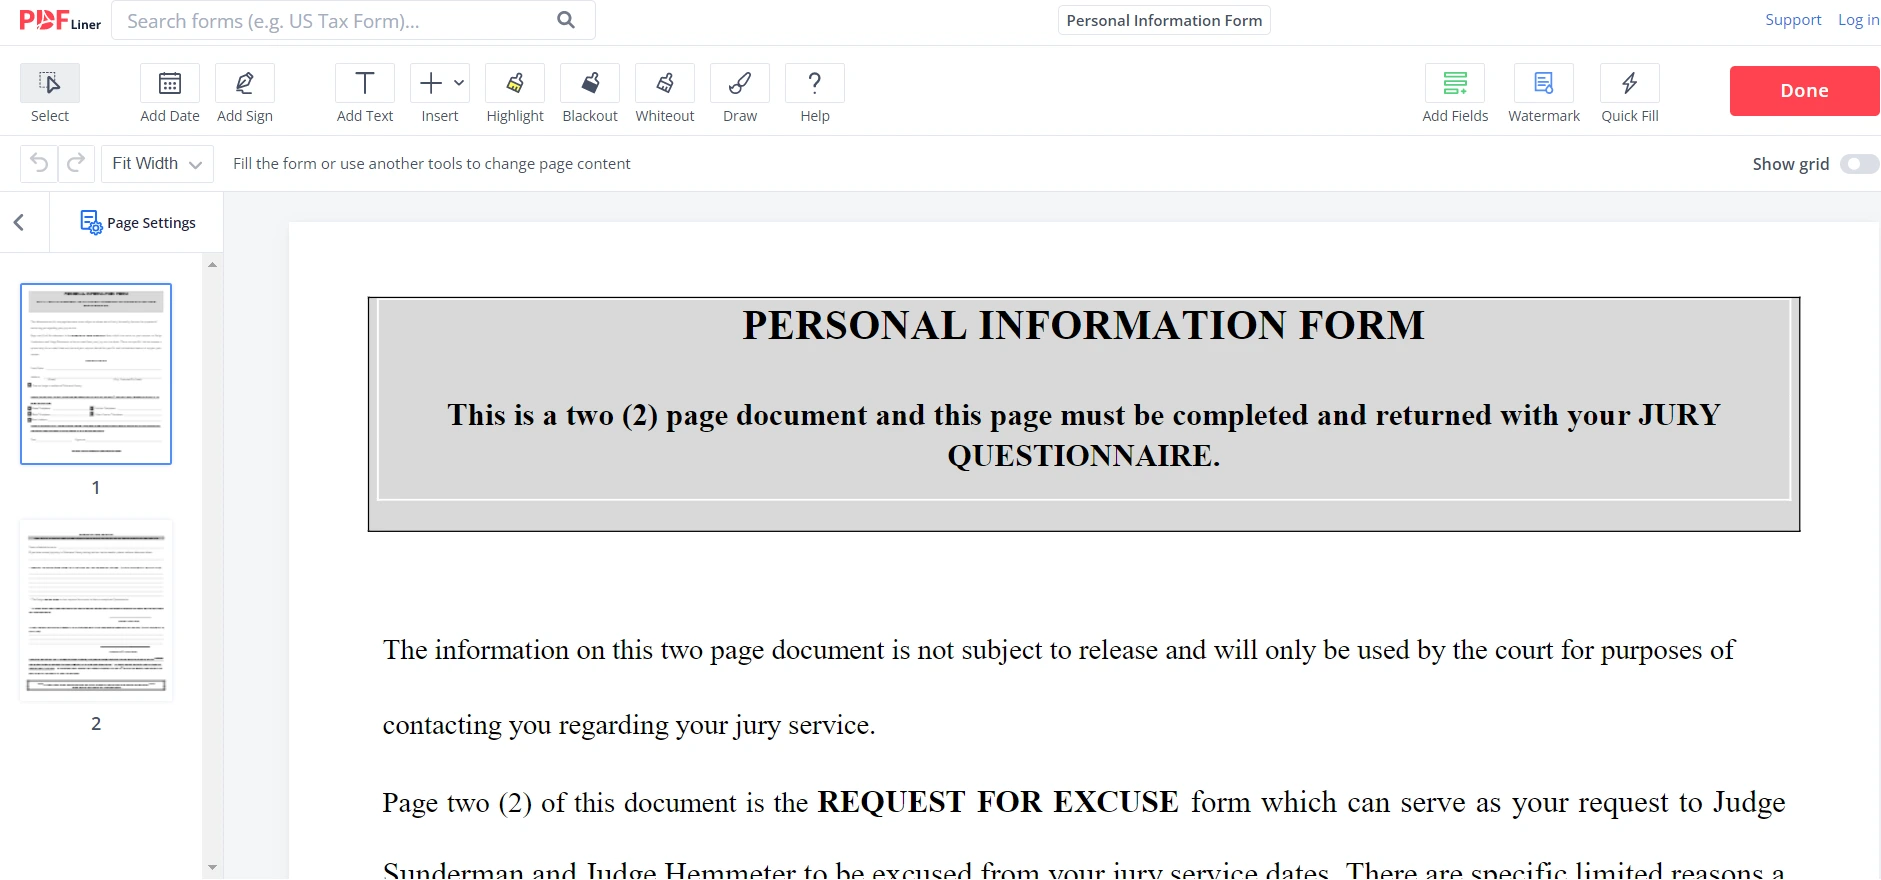 Personal Information Form on PDFLiner